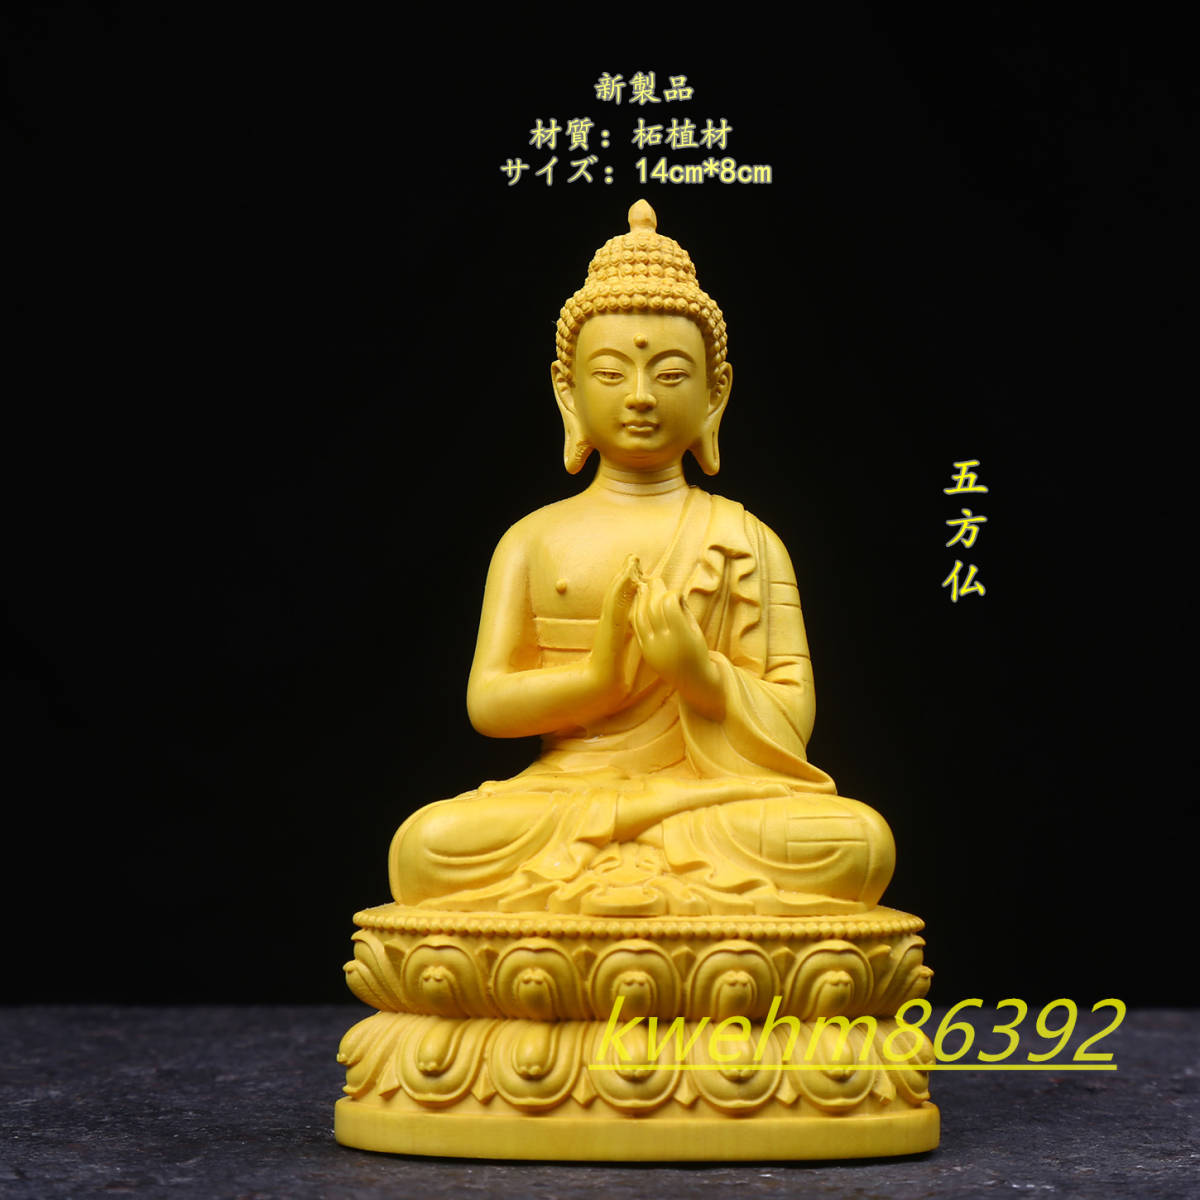 極上彫 木彫り 仏像 五方仏 彫刻 仏教工芸品 柘植材 仏師で仕上げ